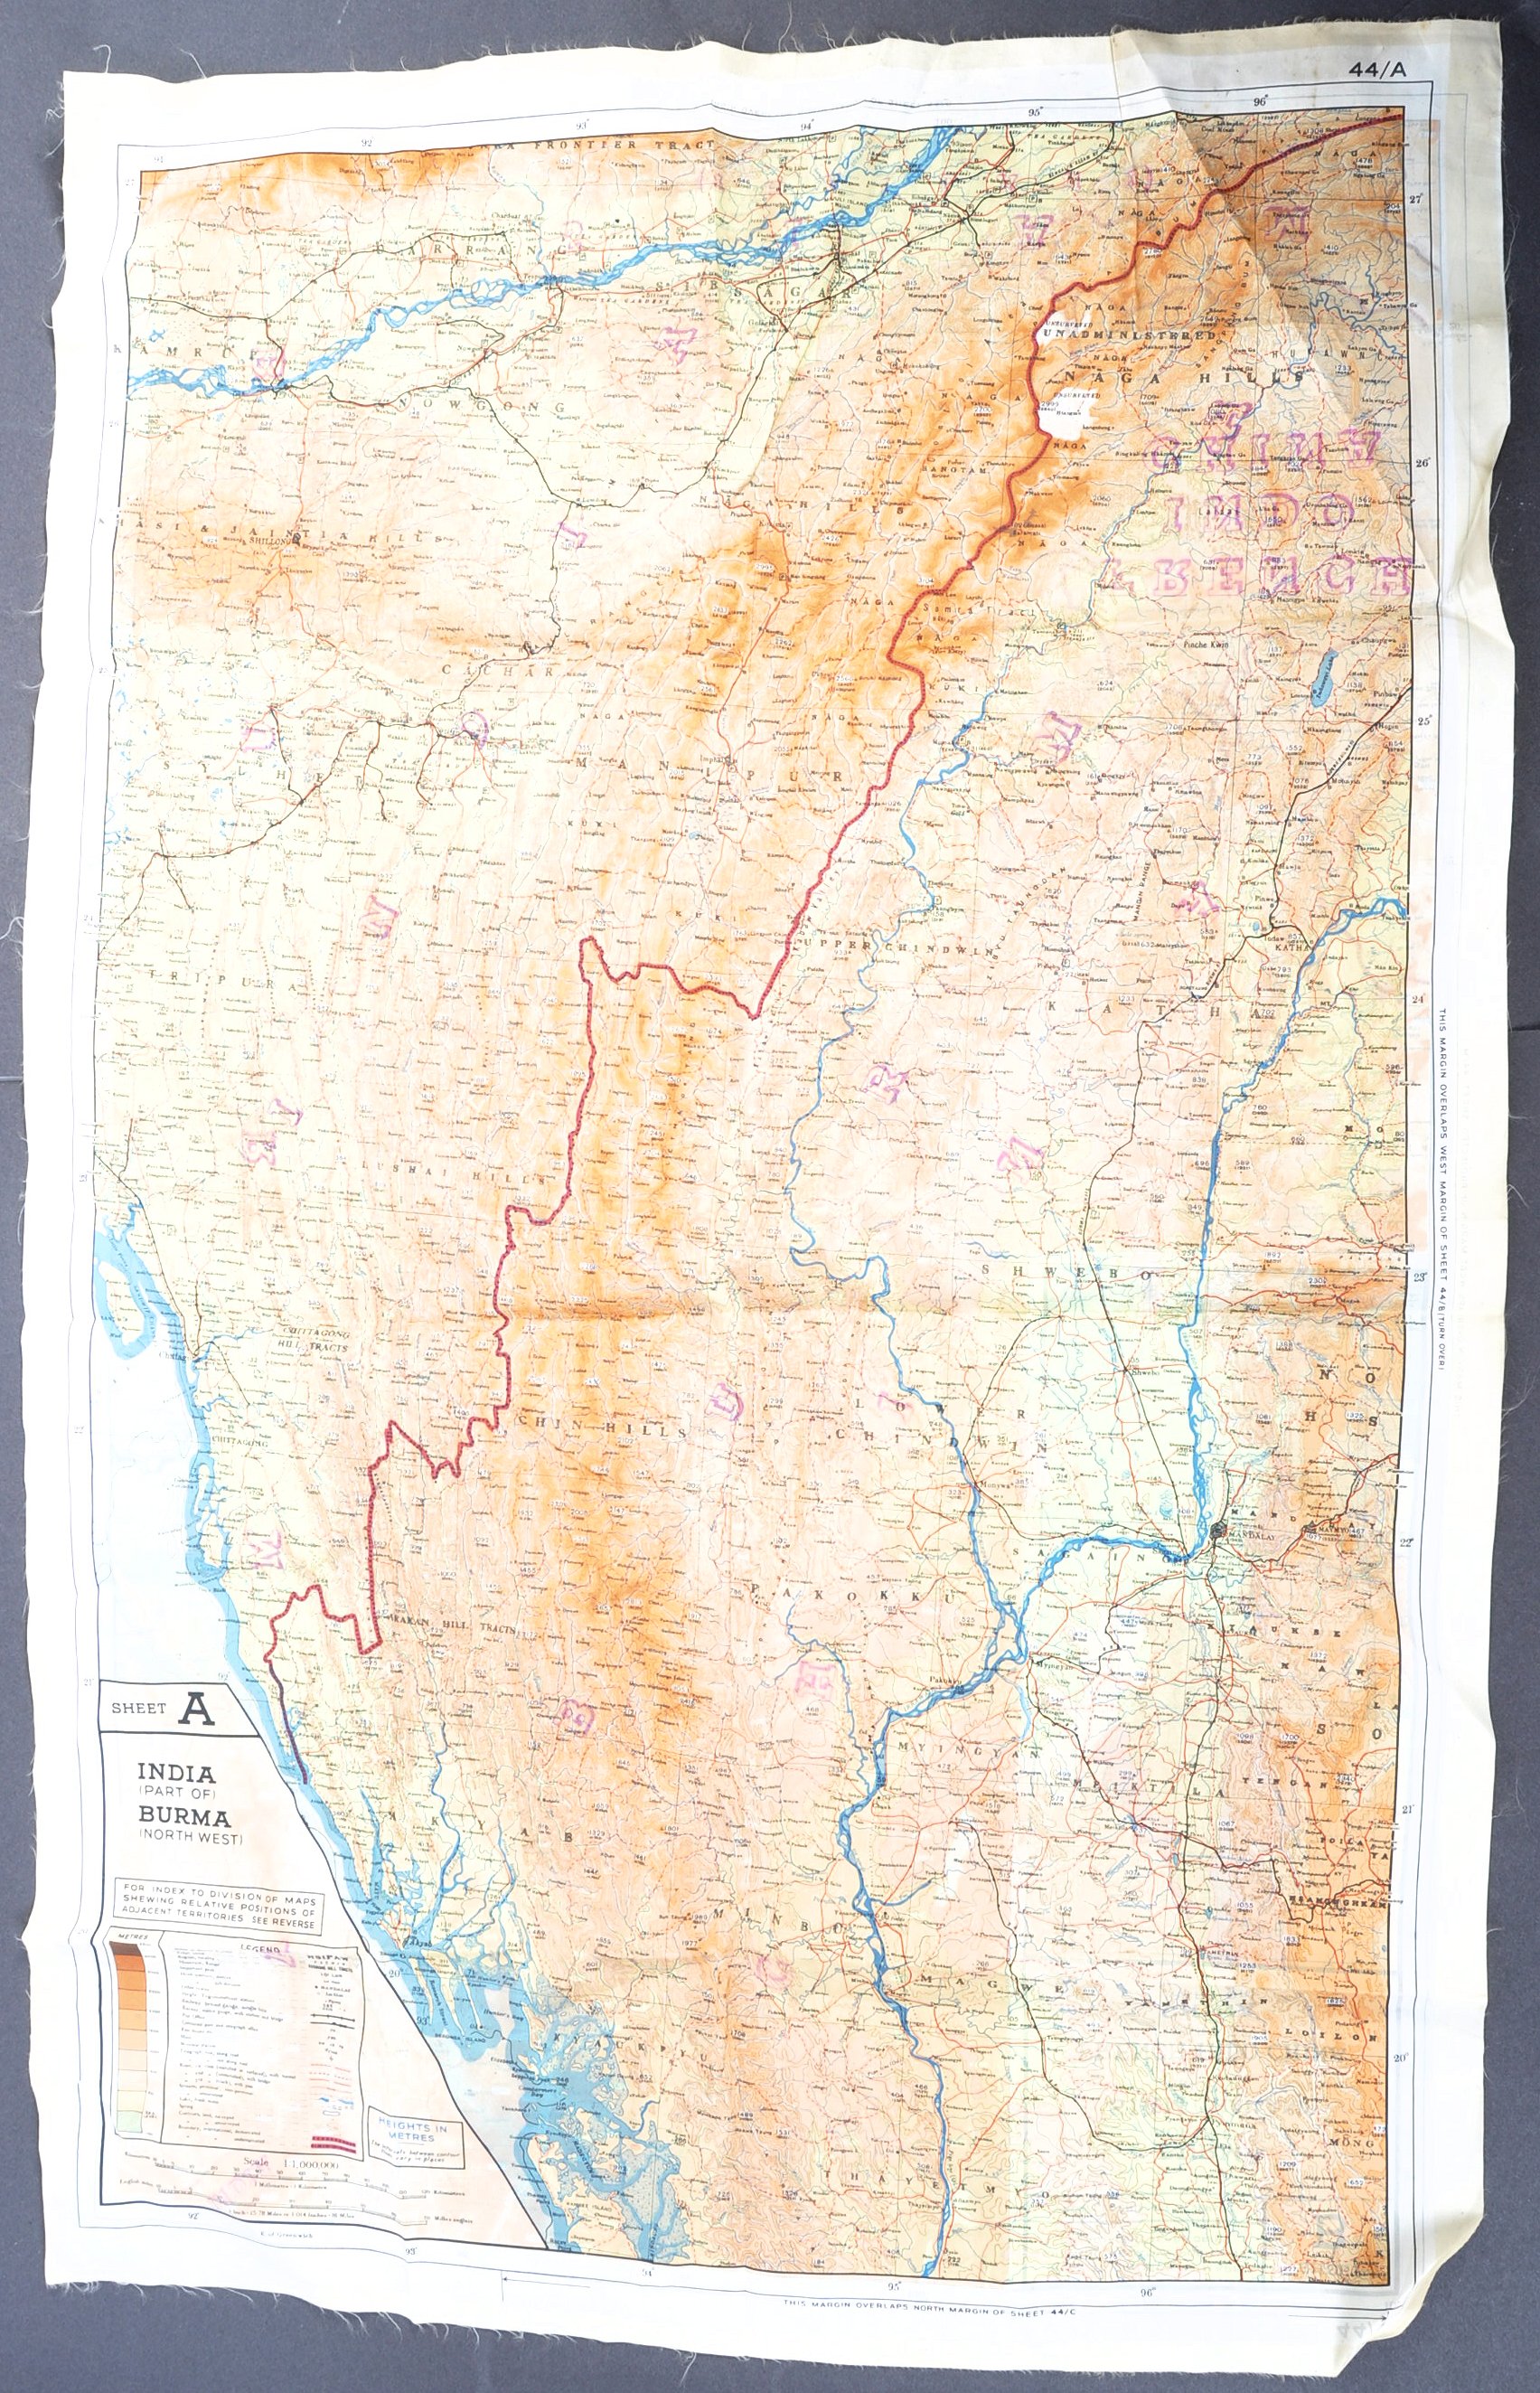 MI9 ESCAPE & EVADE - WWII SILK ESCAPE MAP OF BURMA